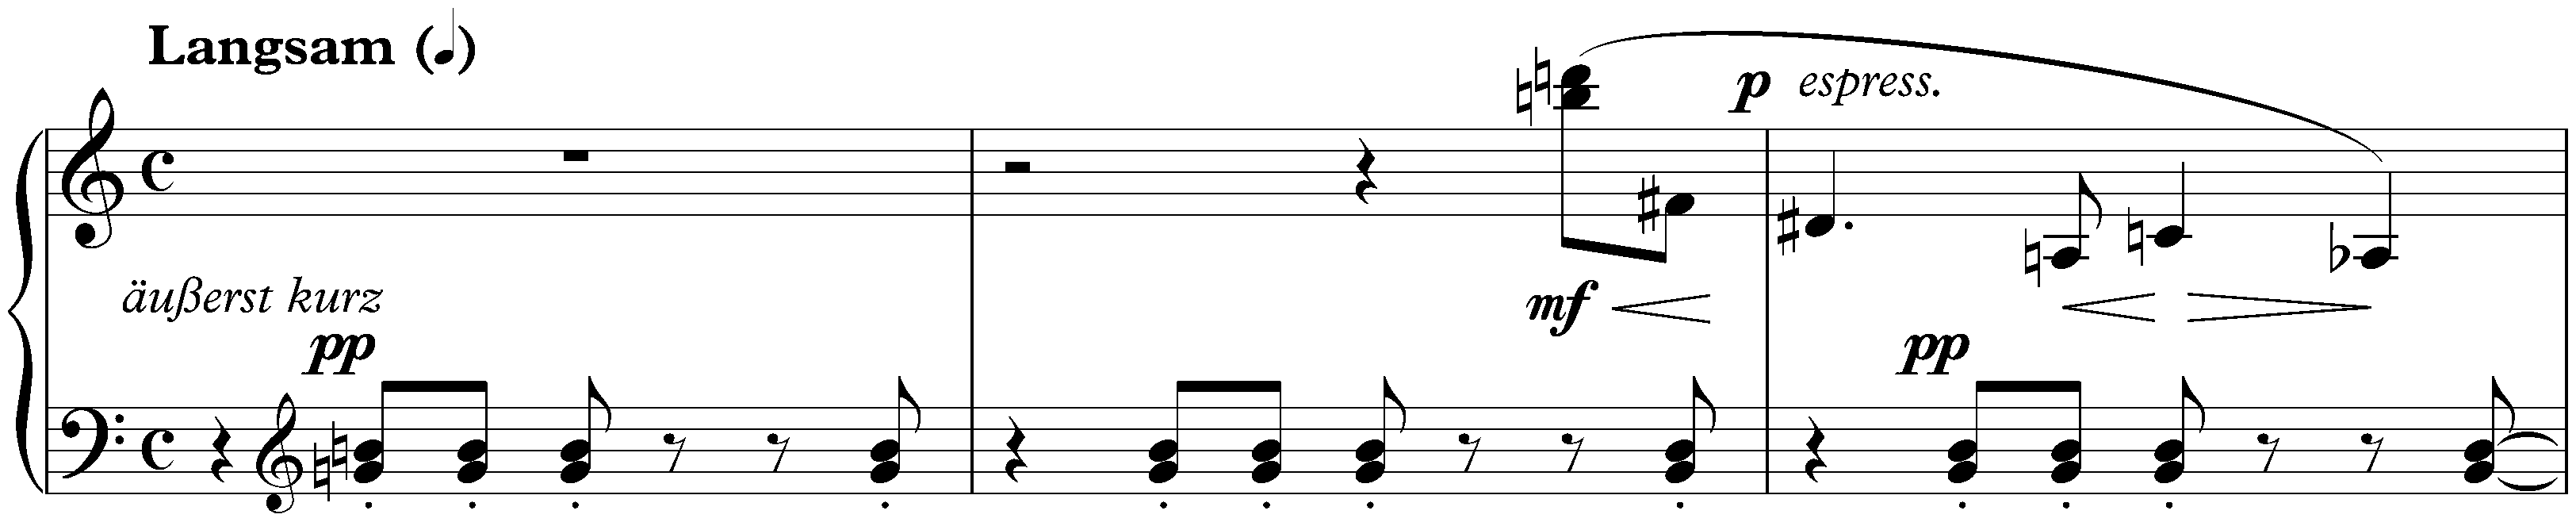 Sechs kleine Klavierstücke, op. 19; 2. Langsam